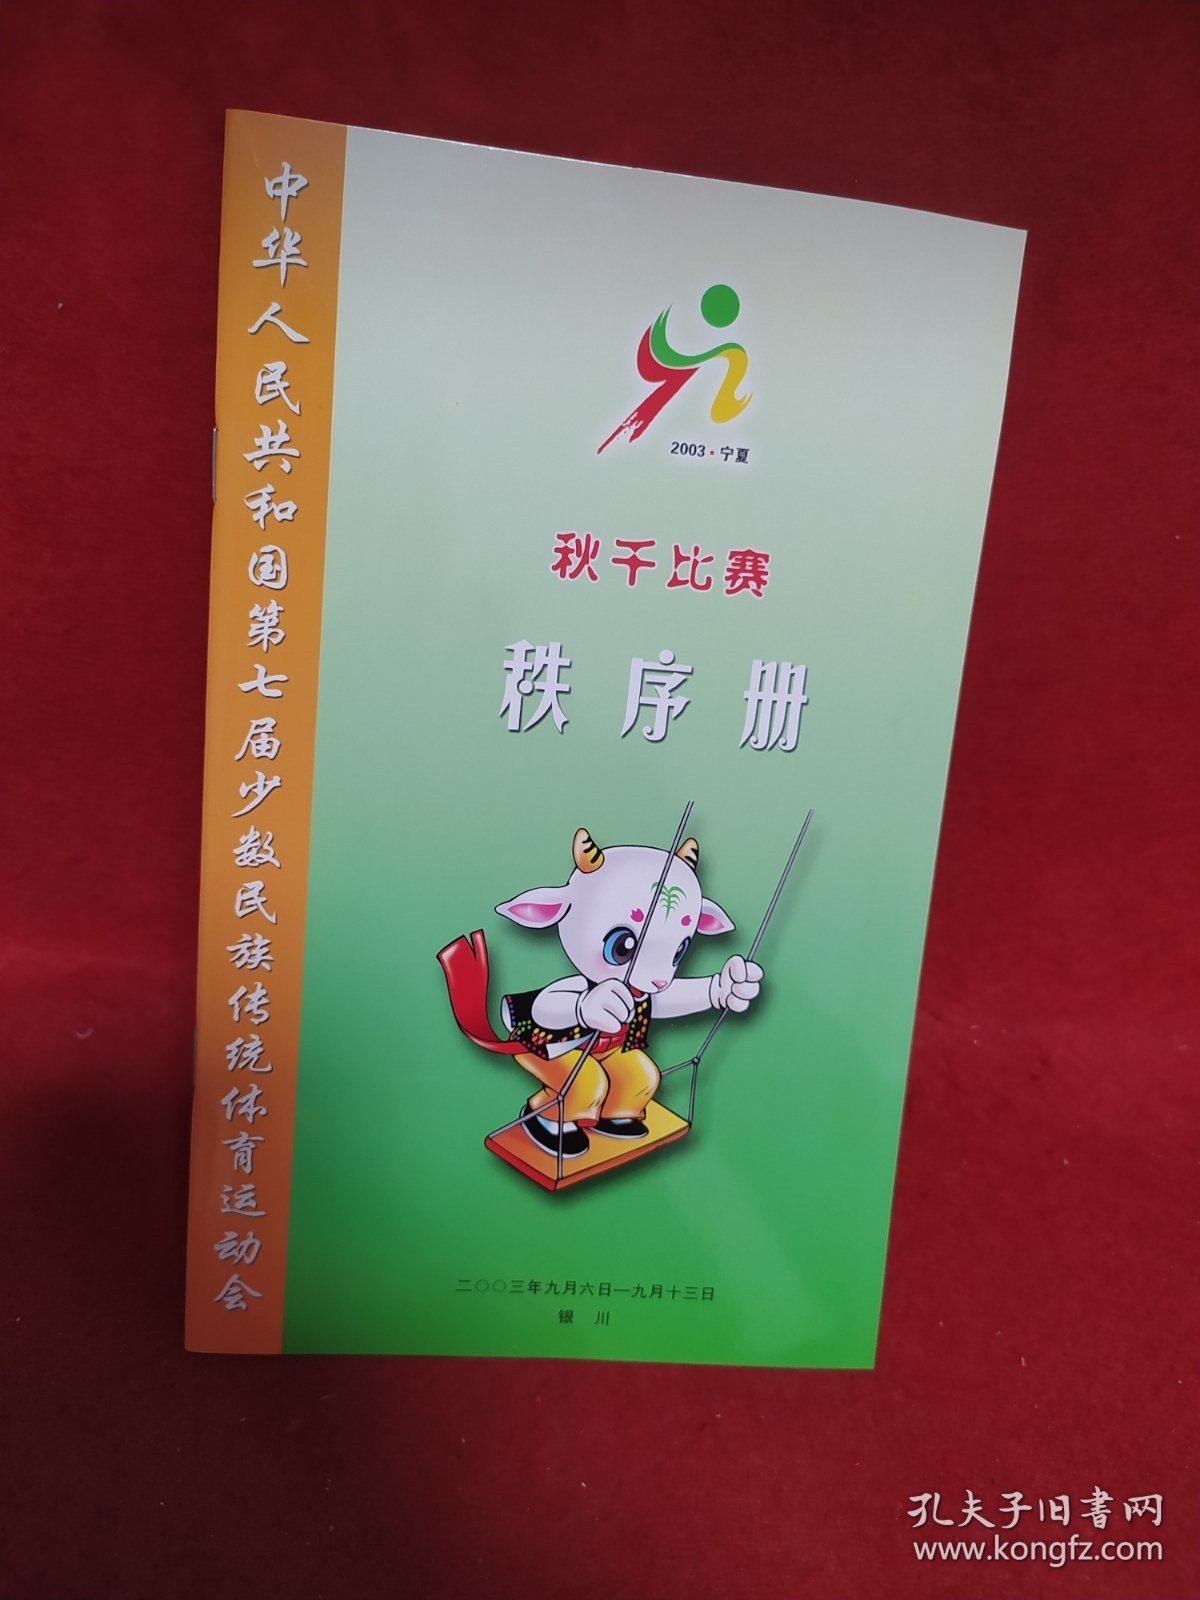 中华人民共和国第七届少数民族传统体育运动会. 秋千比赛秩序册